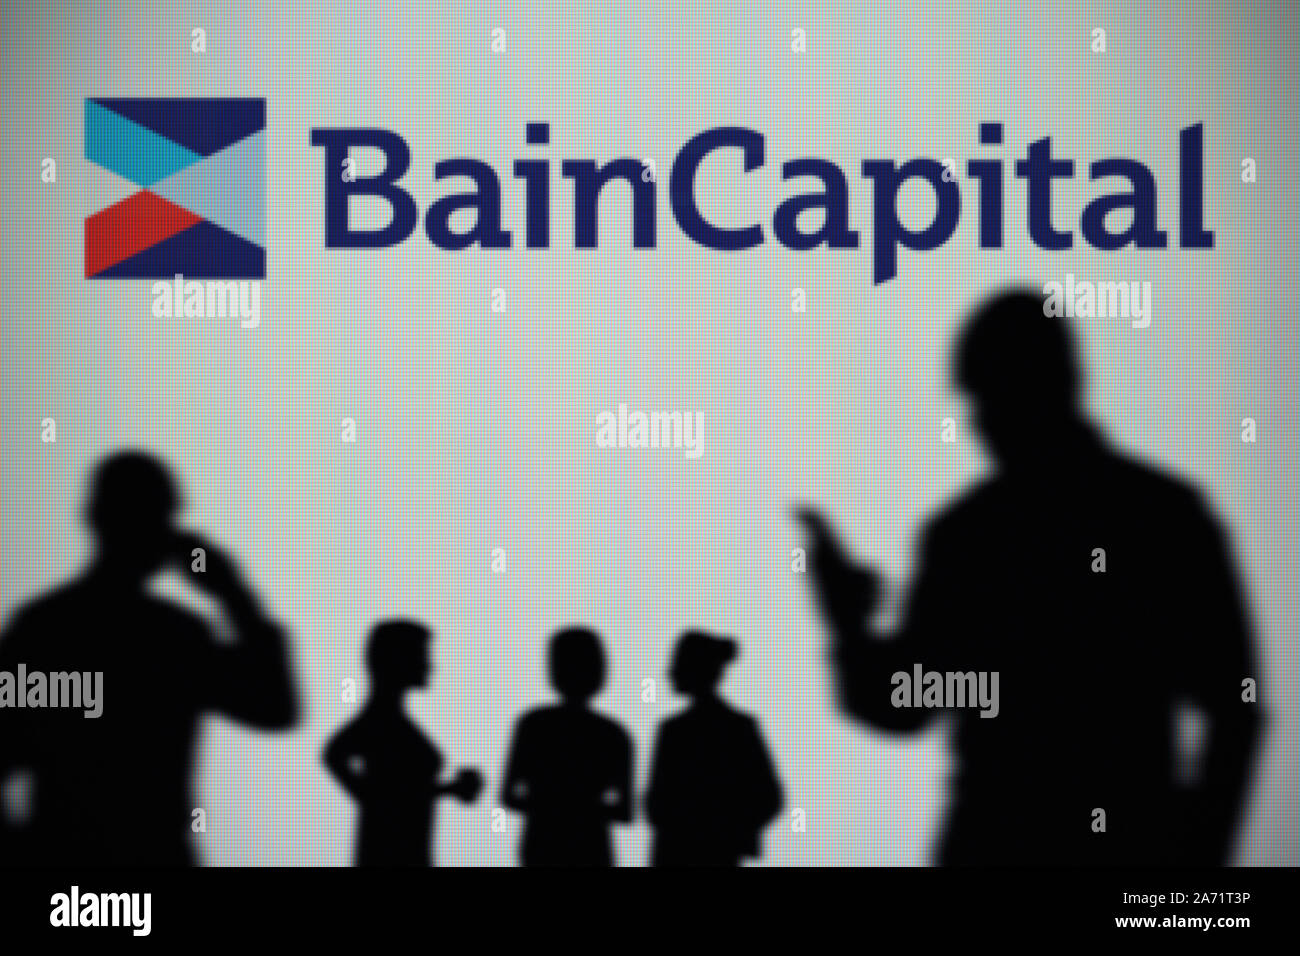 Le Bain Capital logo est visible sur un écran LED à l'arrière-plan tandis qu'une silhouette personne utilise un smartphone (usage éditorial uniquement) Banque D'Images